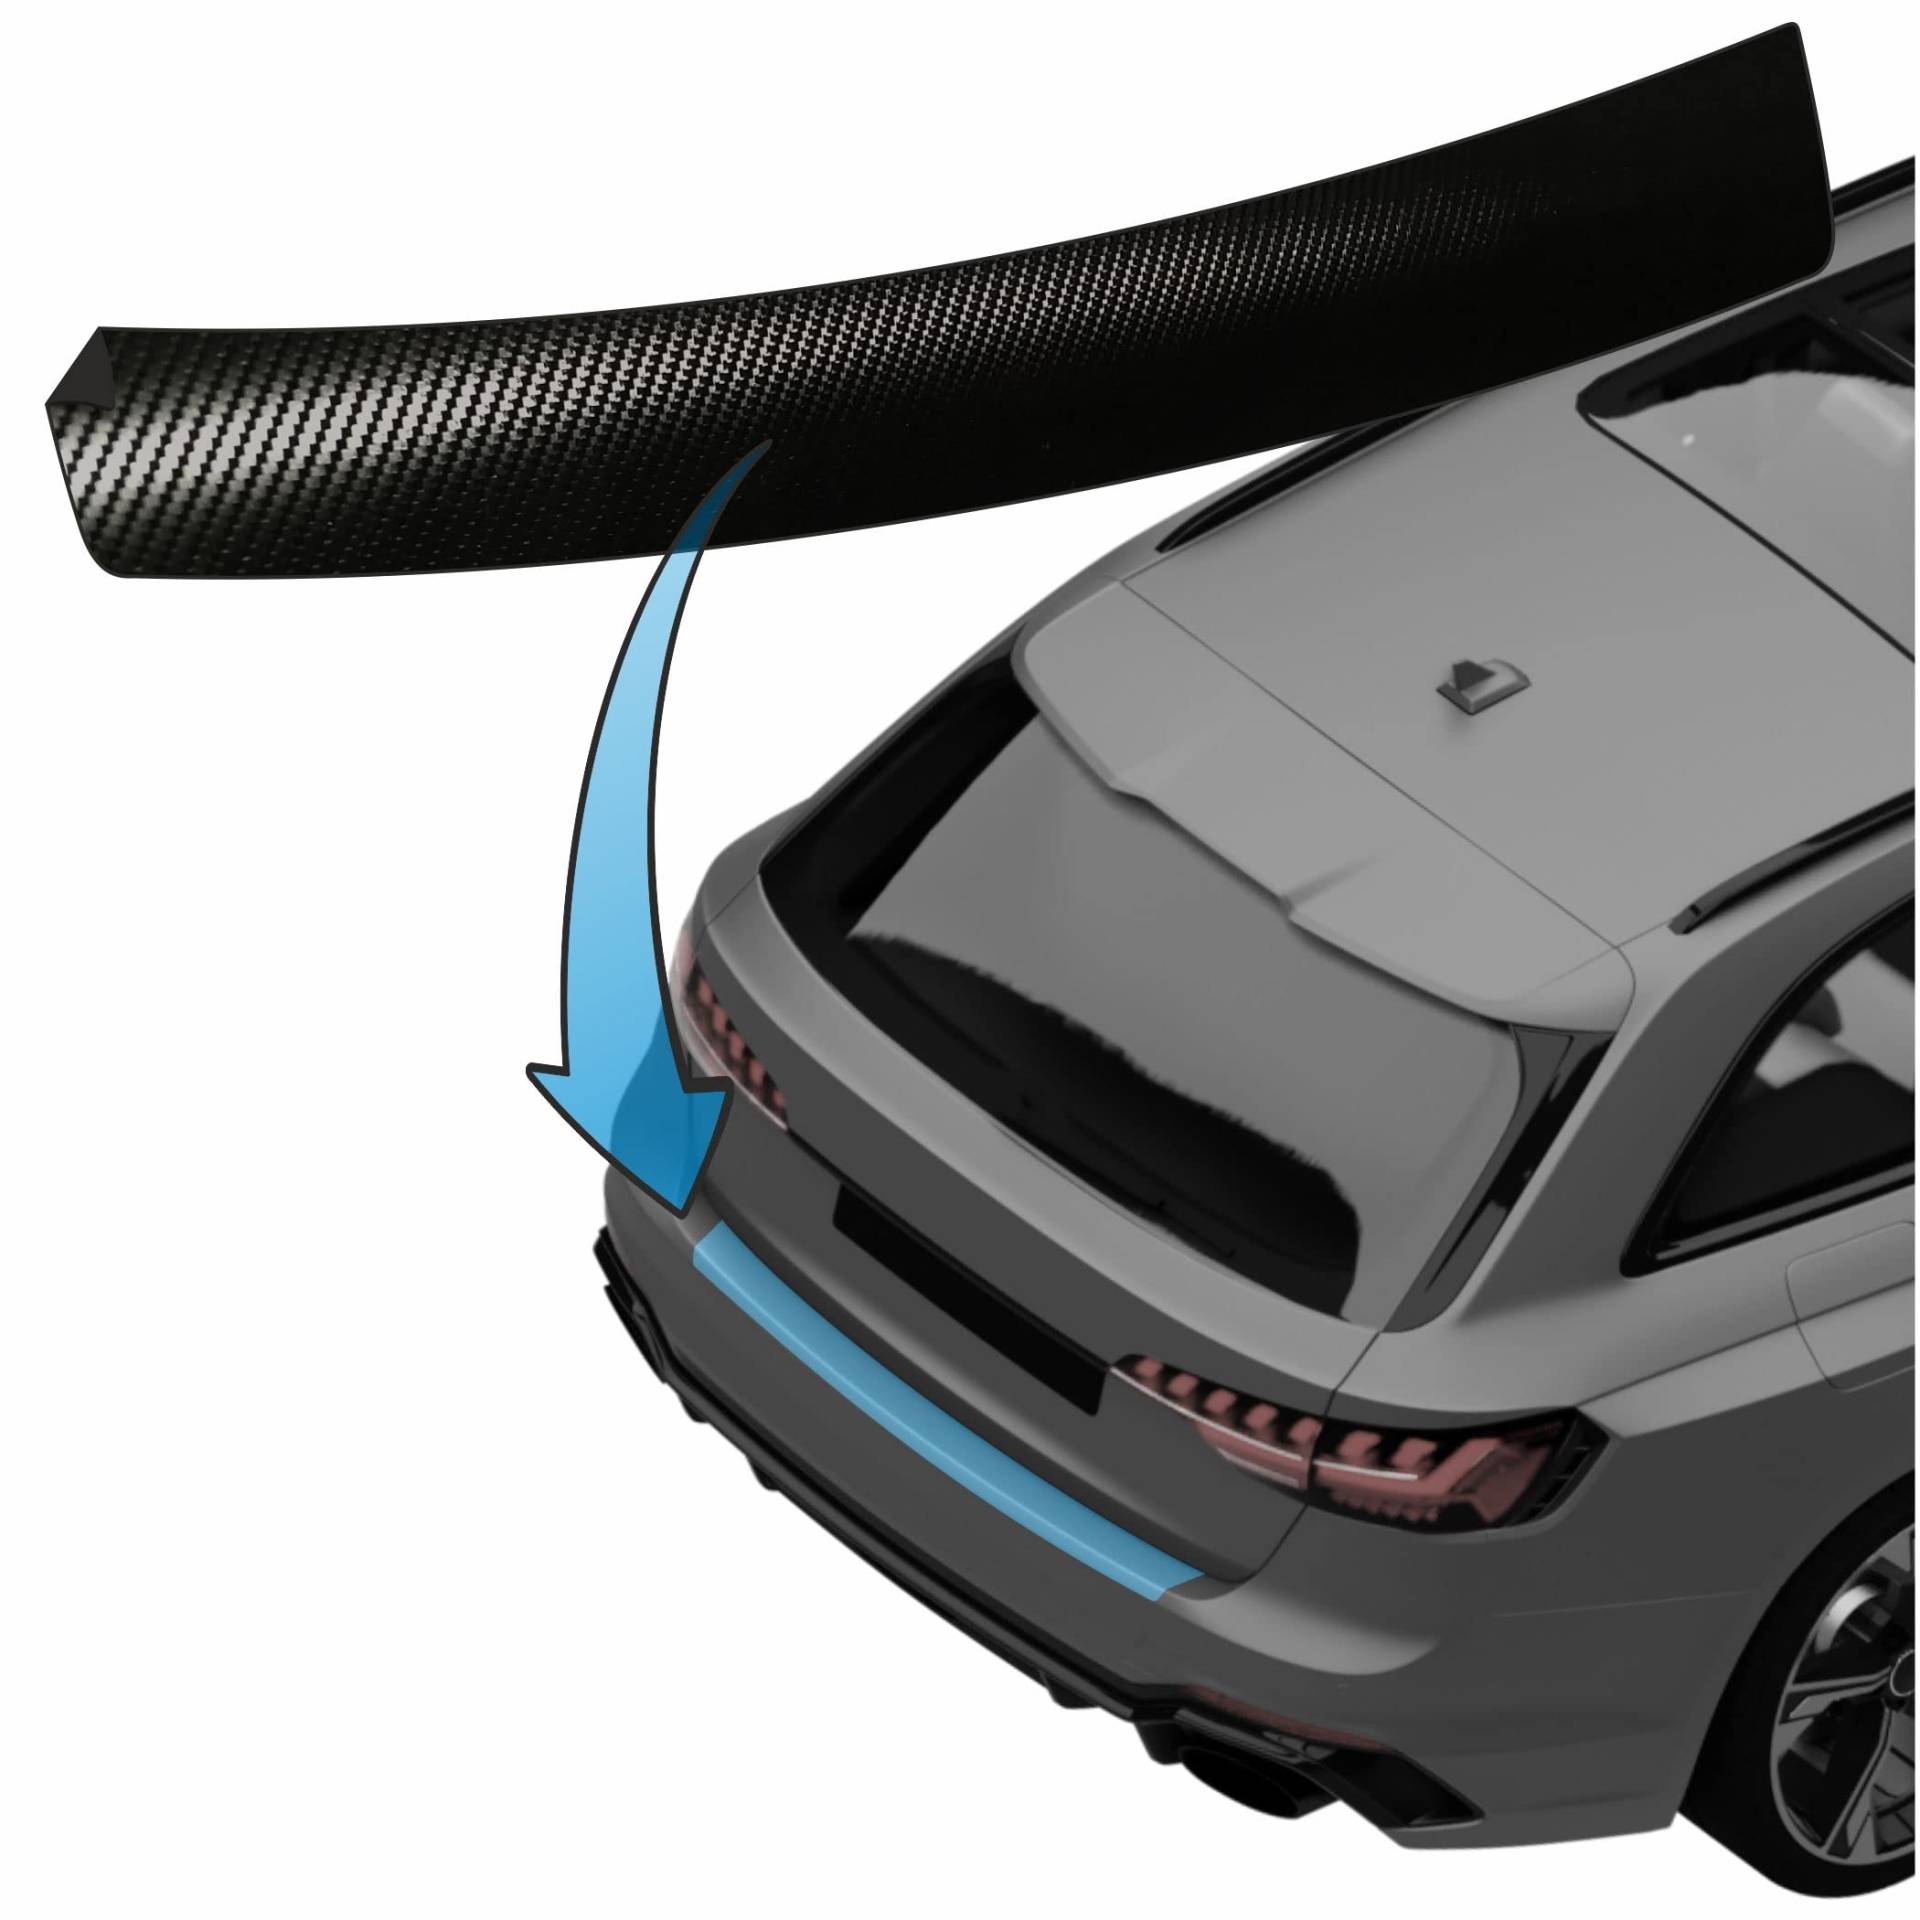 MisterLacky – Lackschutzfolie mit Rakel als Ladekantenschutz Folie passend für Seat Ibiza (IV) Typ 6J / 6P, BJ 2008-2017 in 3D Carbon schwarz (160µm) von Lackschutzshop